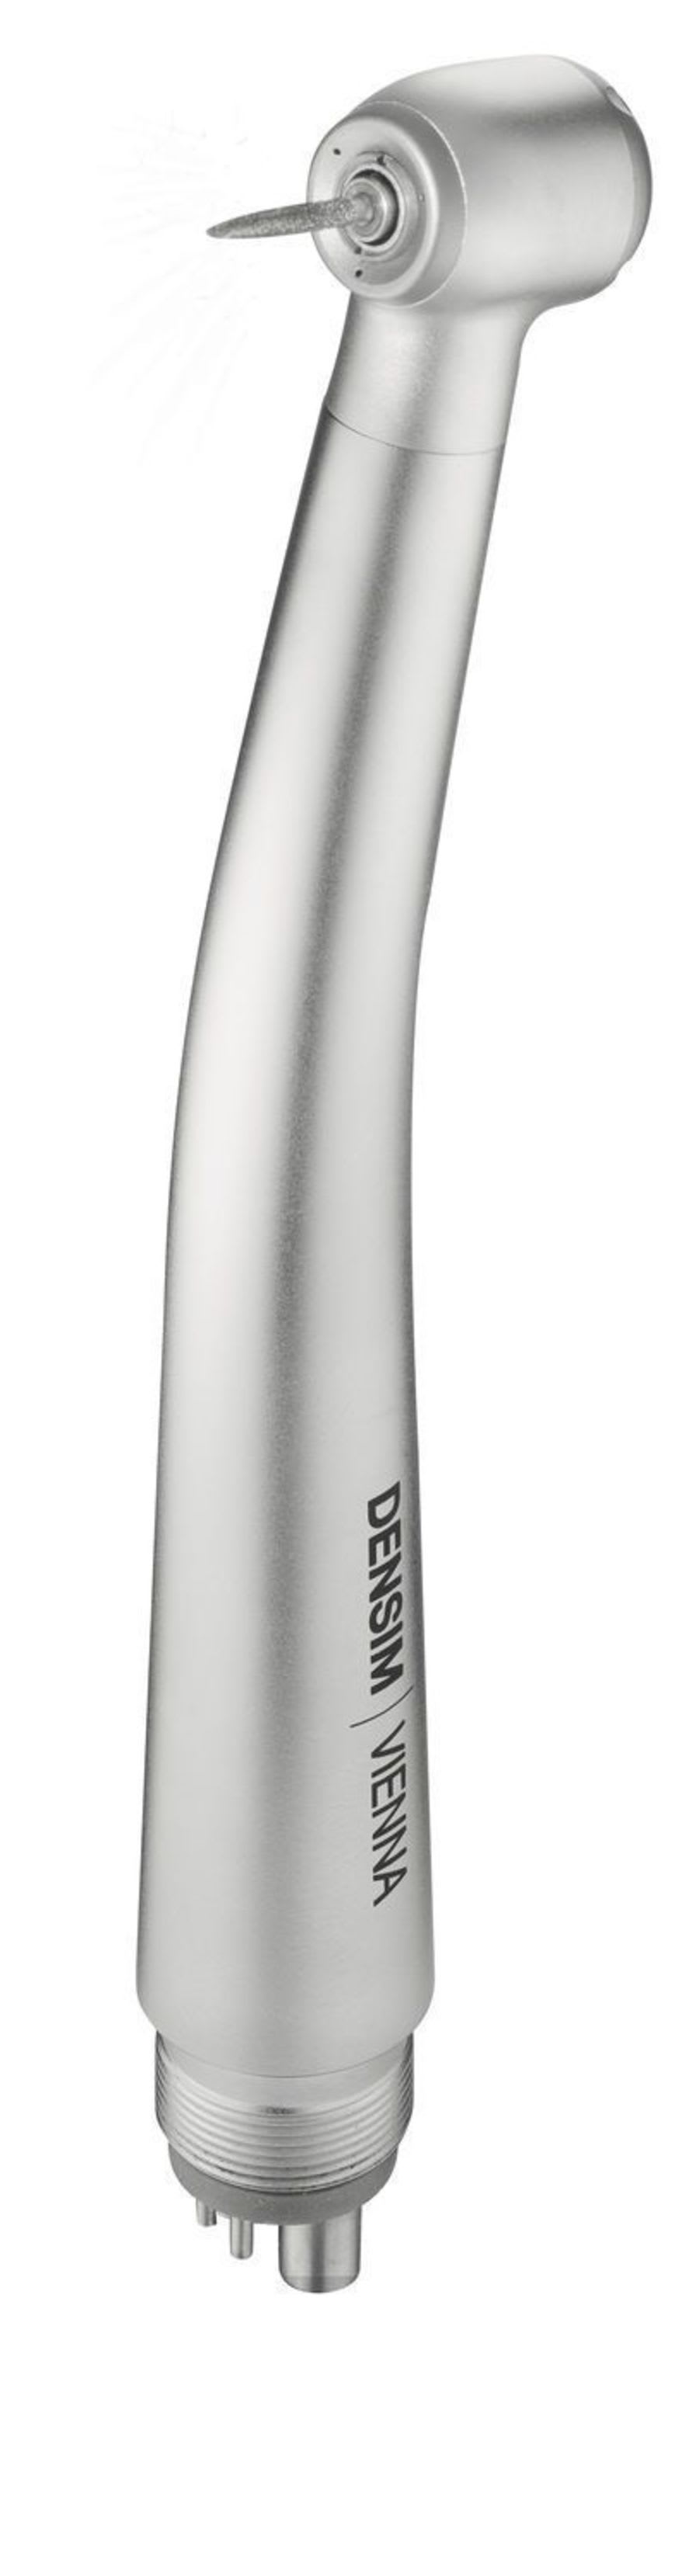 Dental turbine DENSIM VIENNA DIPLOMAT DENTAL s.r.o.